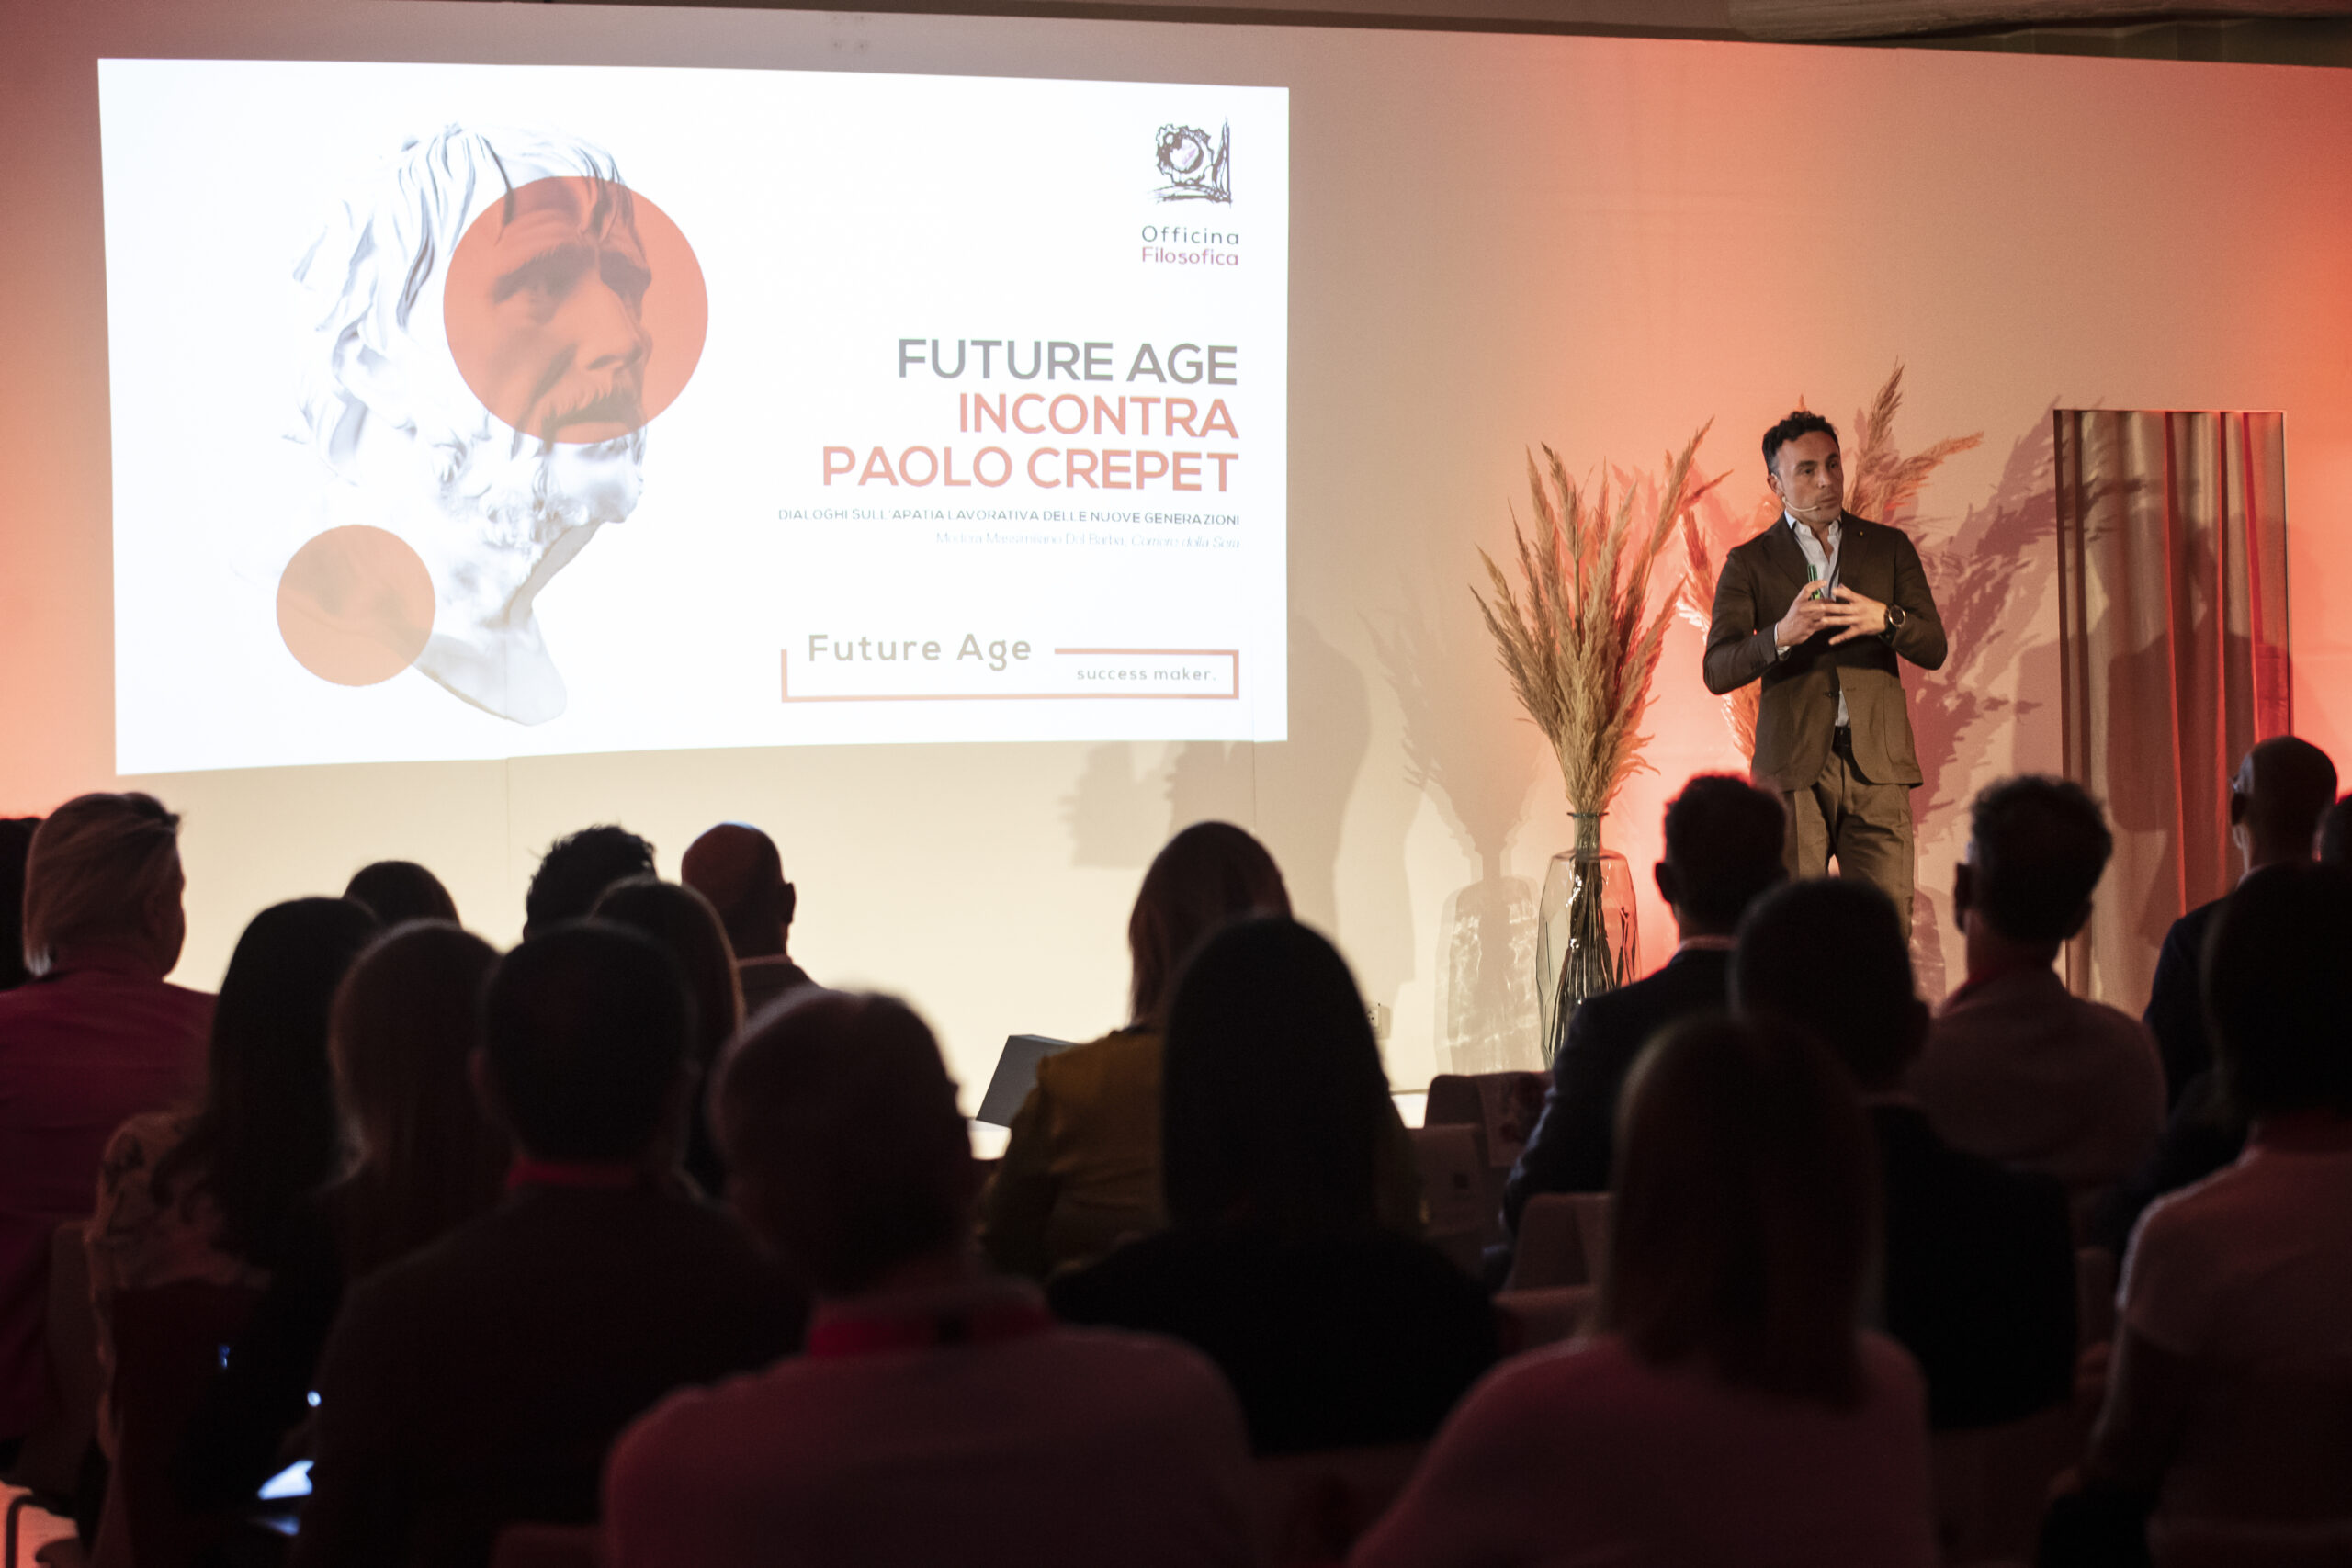 Future Age incontra Paolo Crepet nella foto convegno economia Bedizzole 14/10/2022